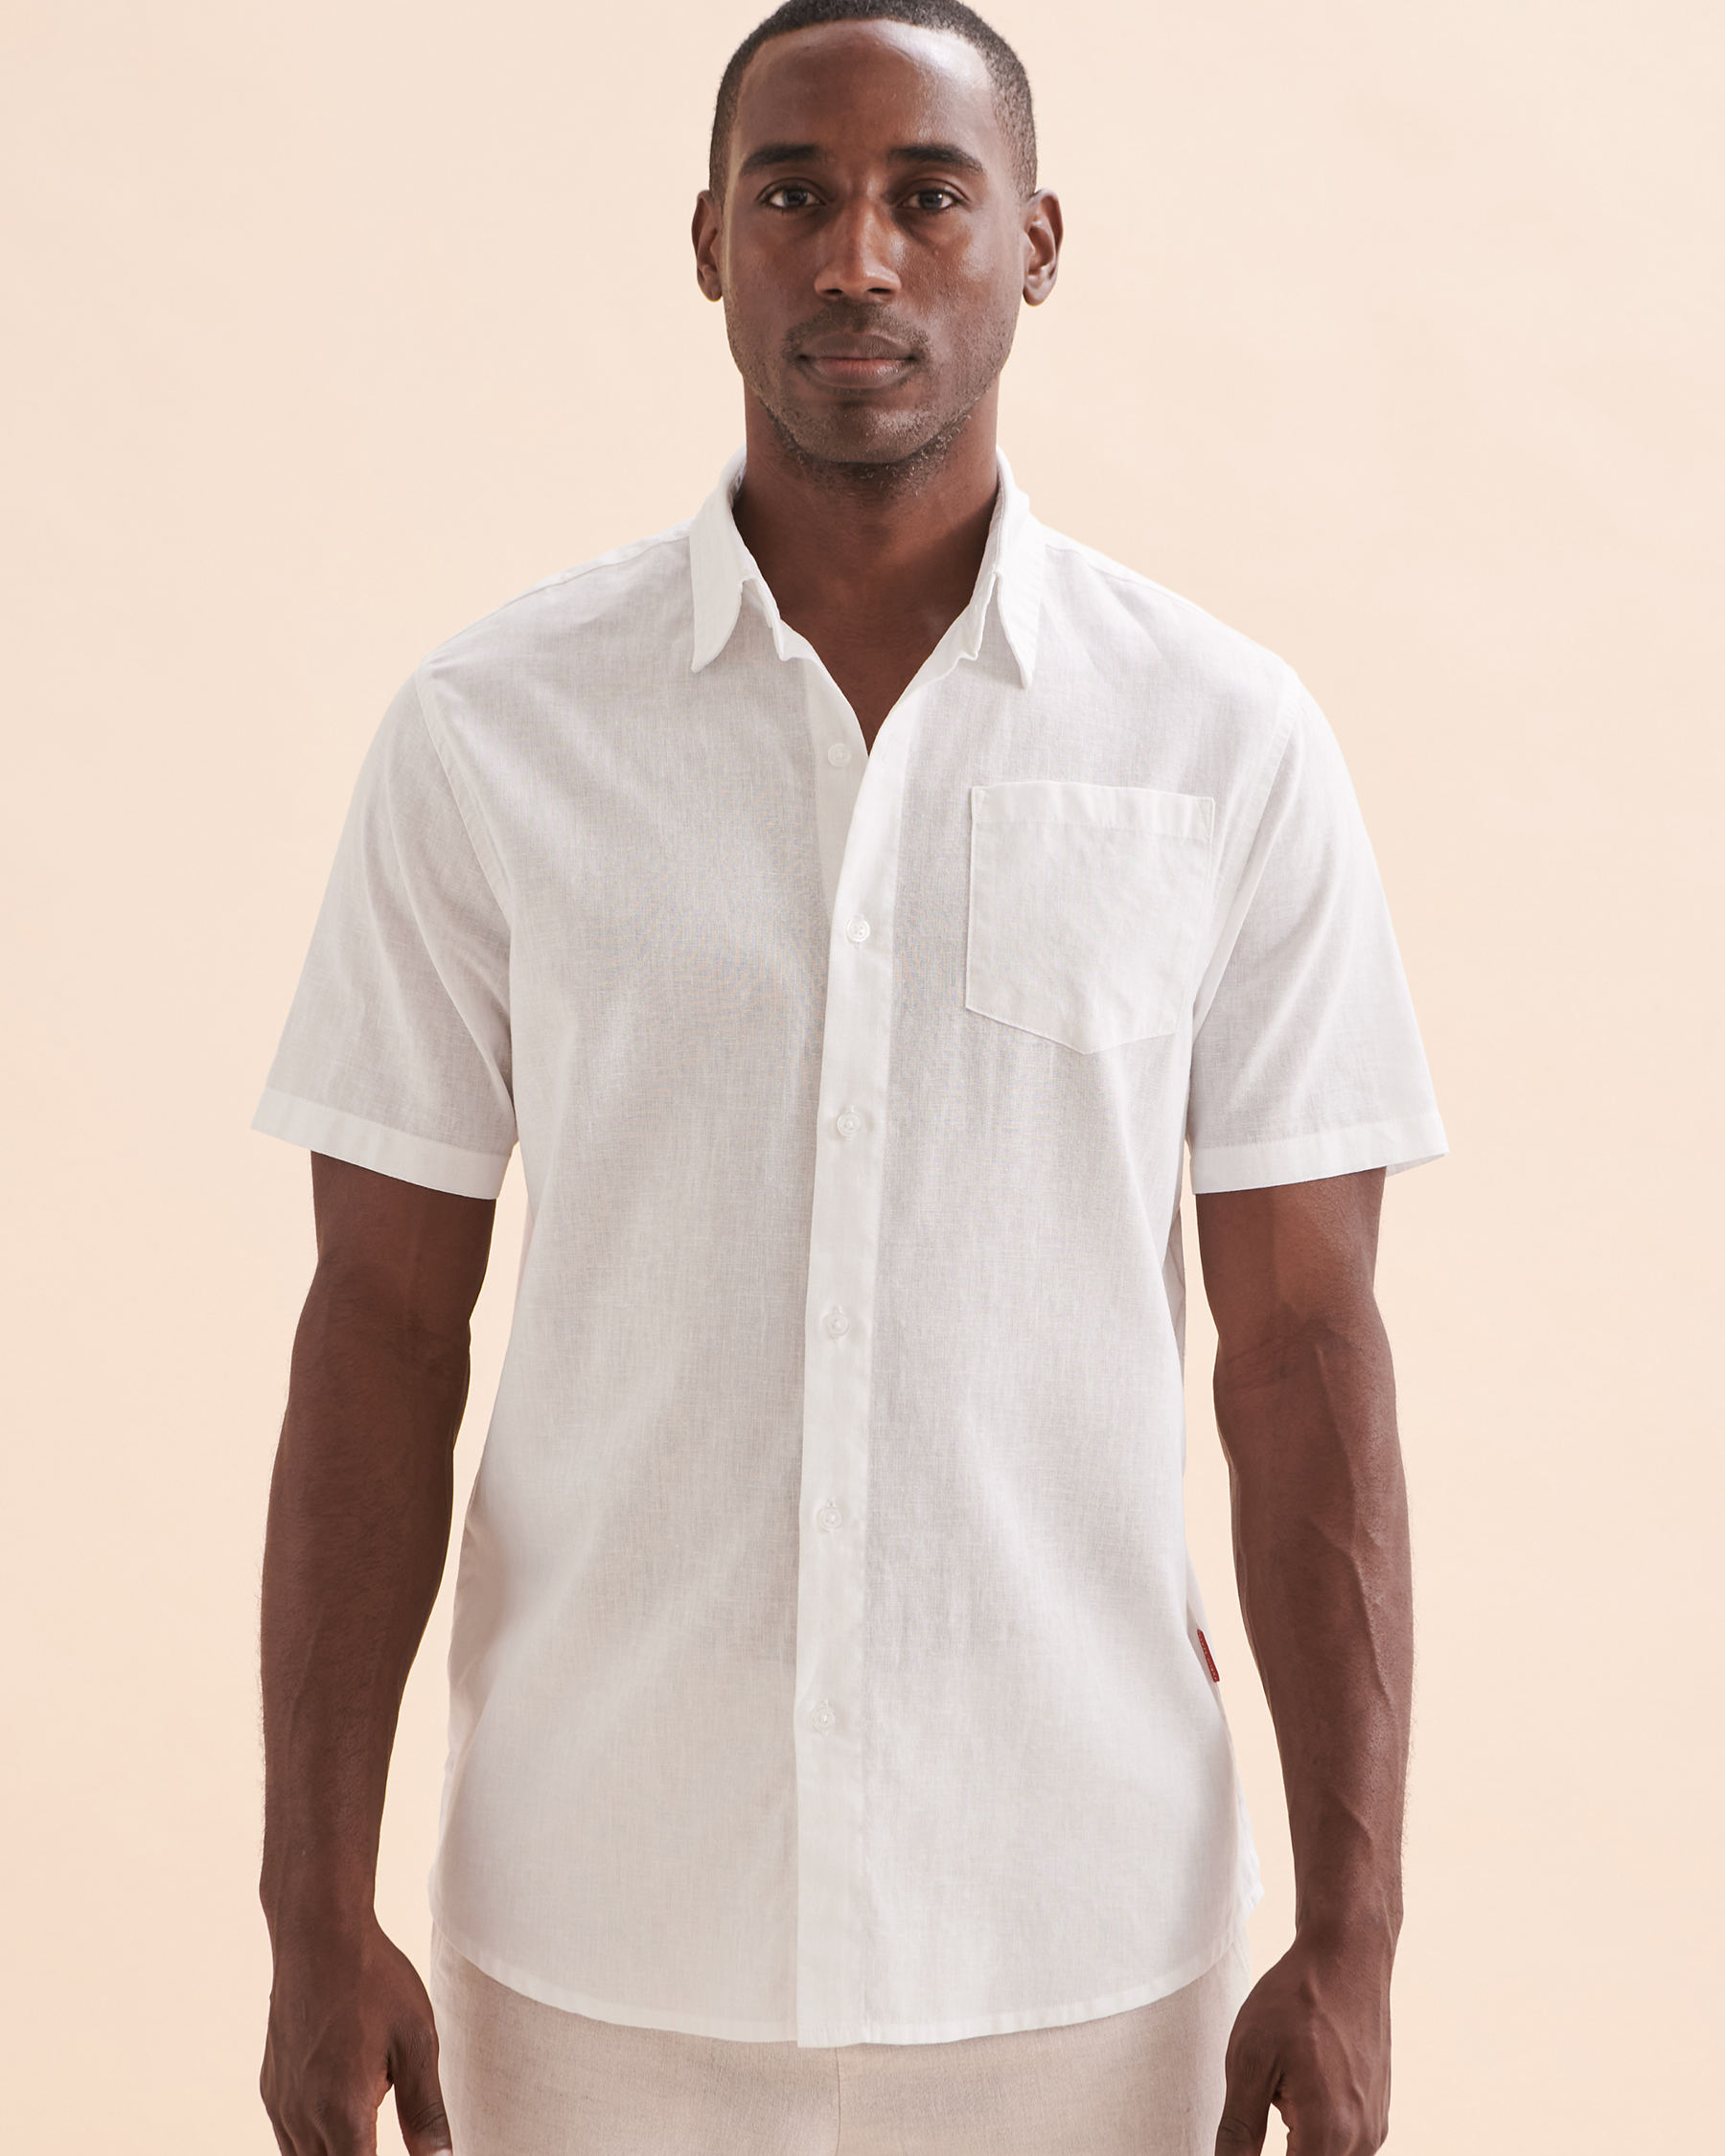 PUBLIC BEACH Linen Short Sleeve Shirt White PB6242BIK - View4